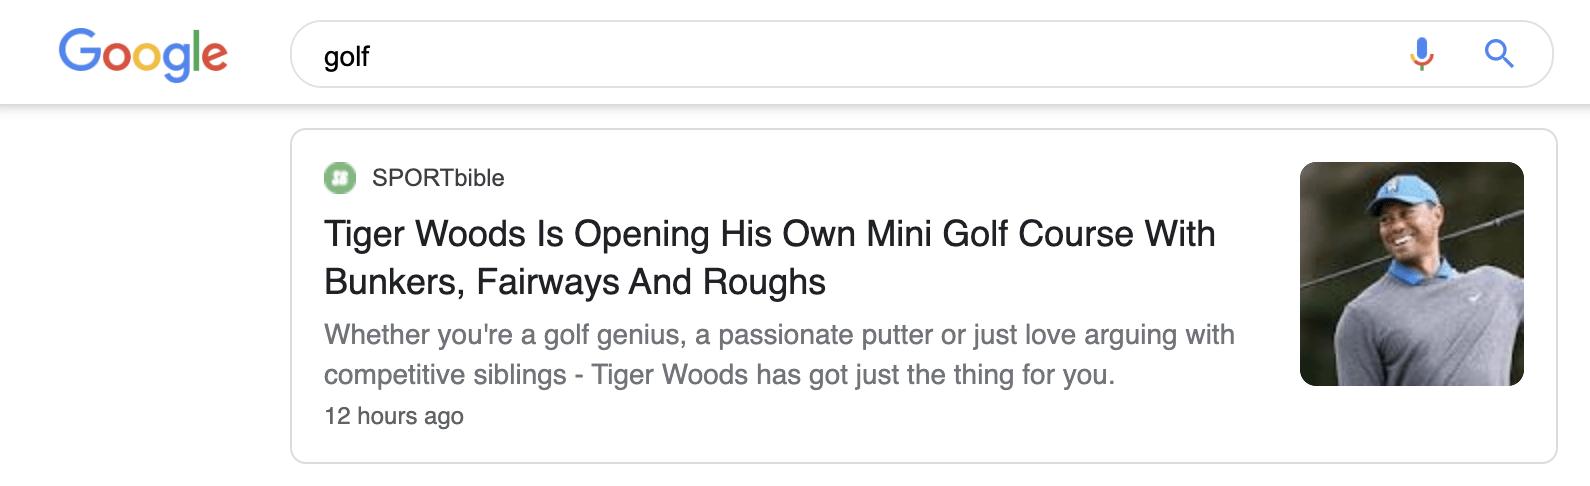 24 golf news